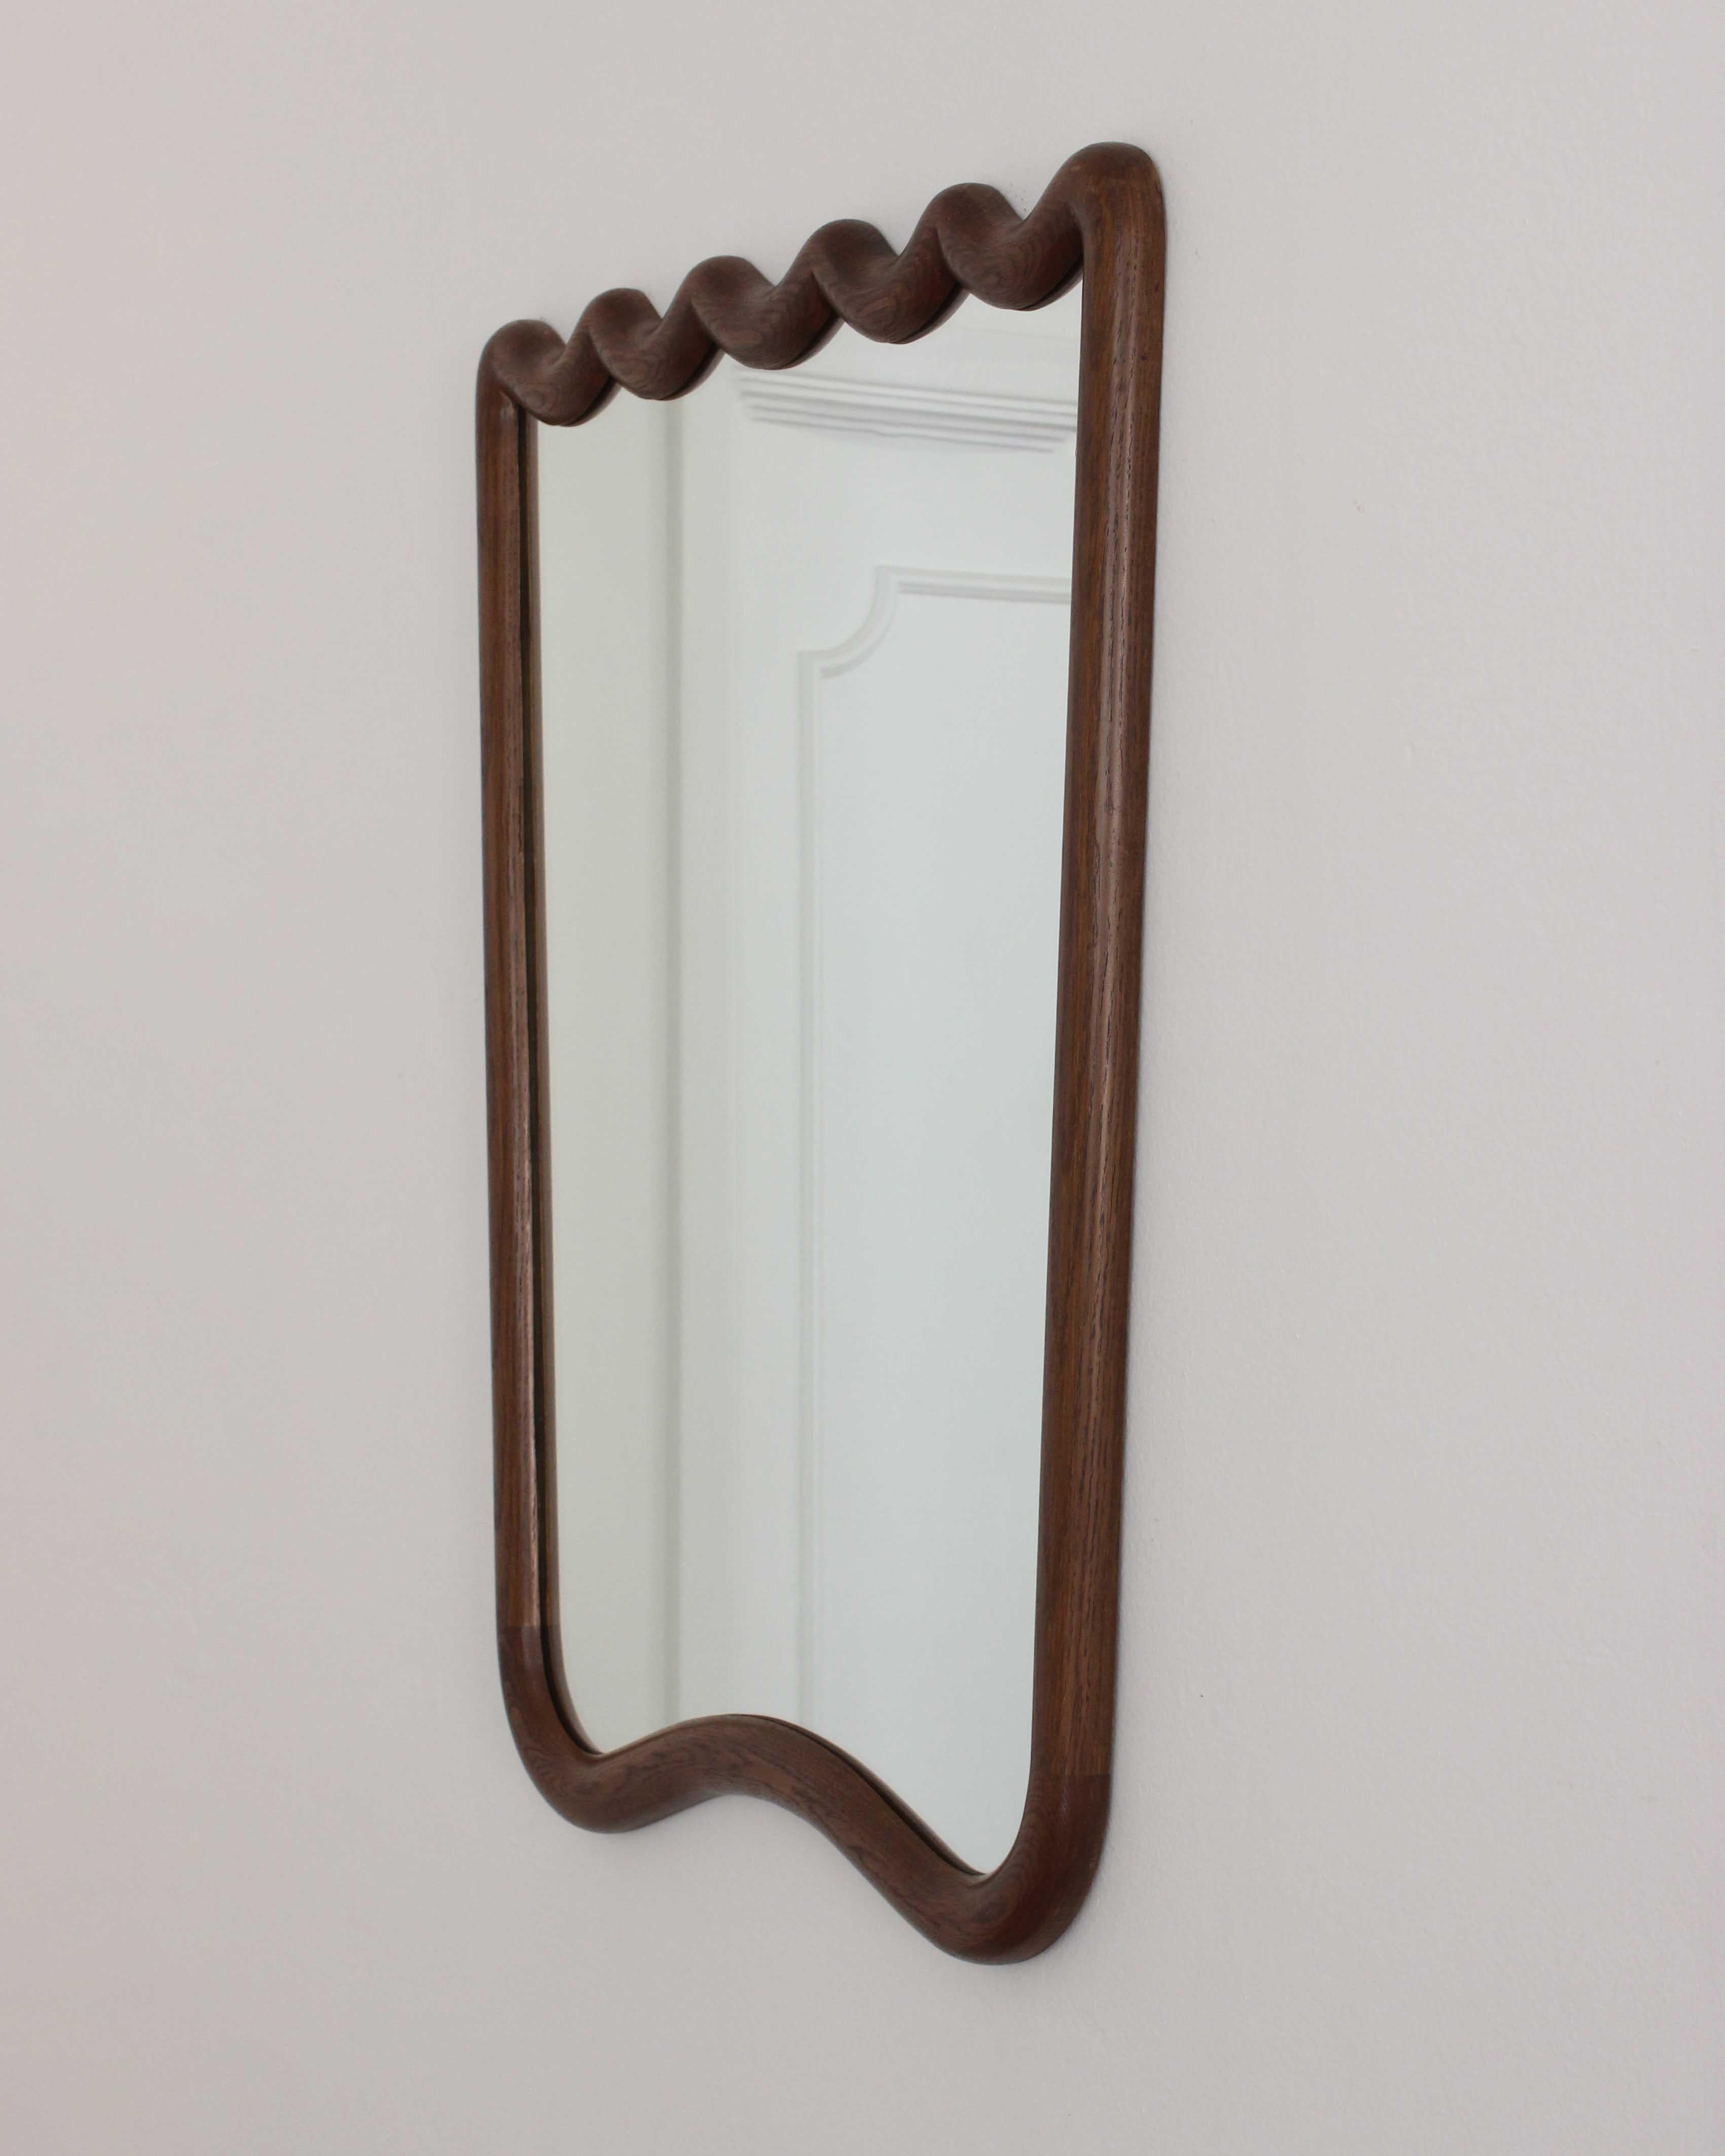 Spiegel aus französischer Eiche, inspiriert von italienischen Vintage-Spiegeln. 

Handgefertigt in Los Angeles, CA. 

Kundenspezifische Ausführungen und Größen sind auf Anfrage erhältlich. Die Preise variieren.